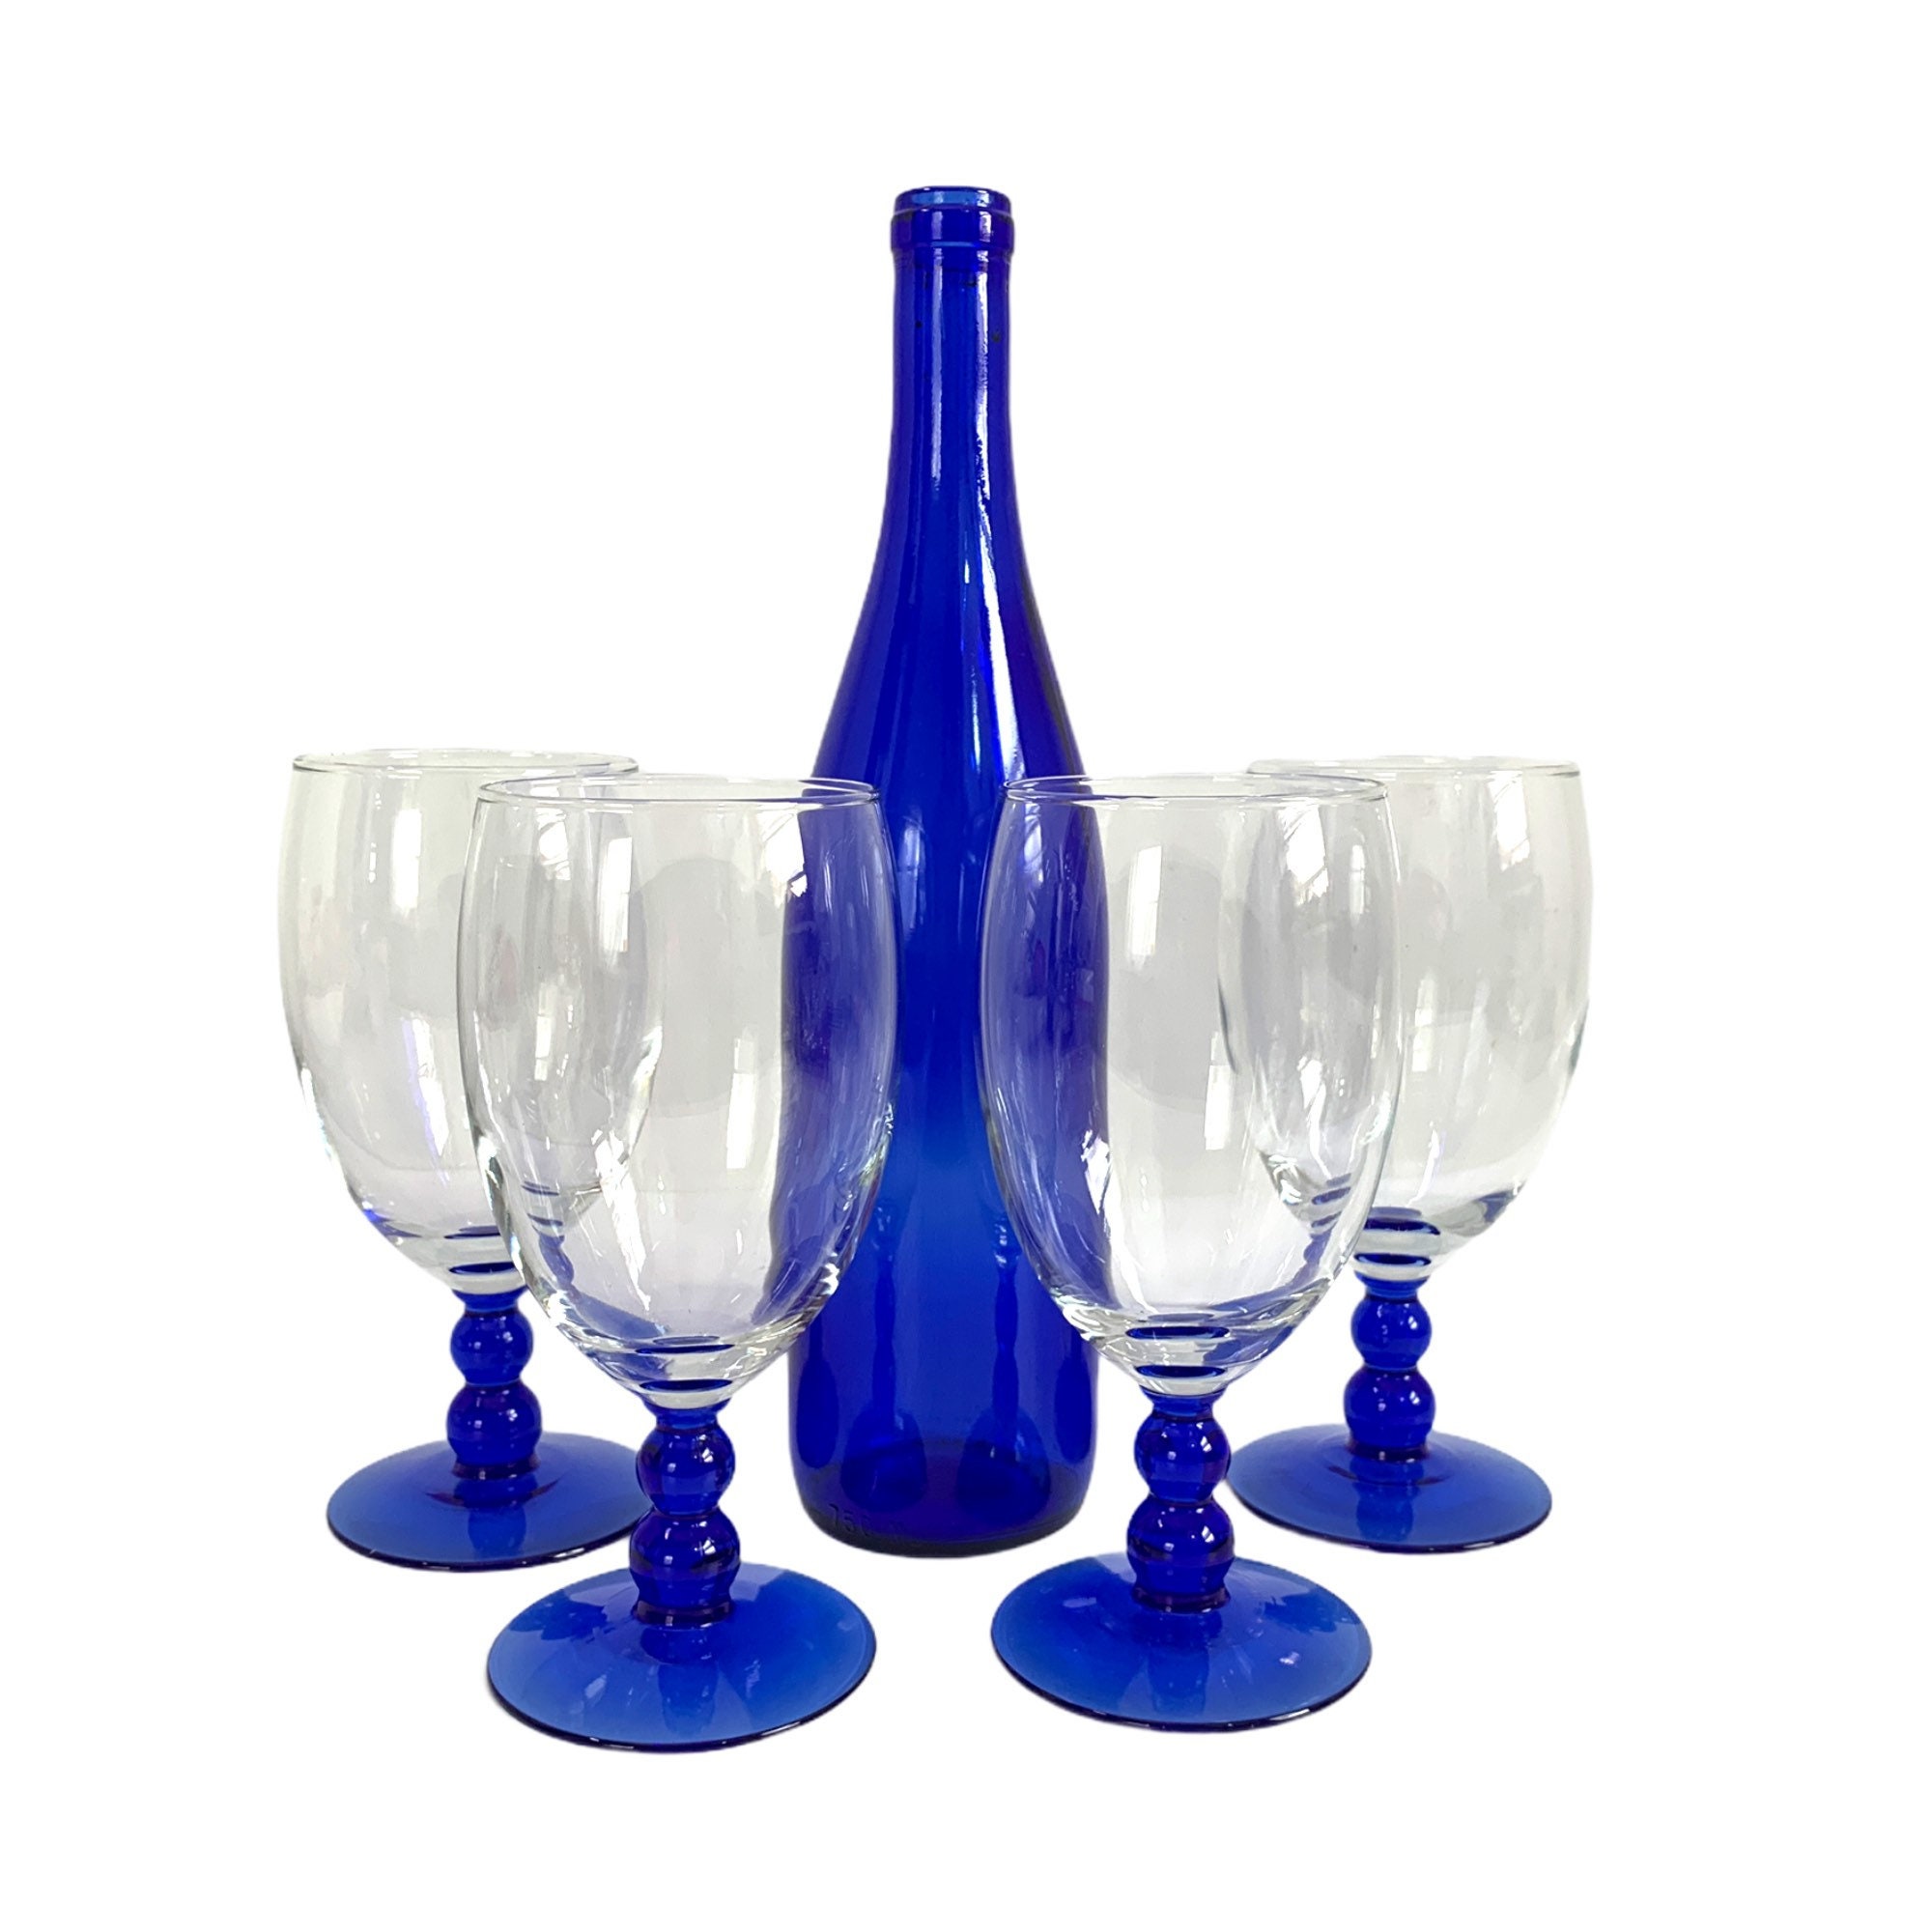 Cobalt Blue Iced Tea Glasses - Set of Twelve (12) - Excellent!